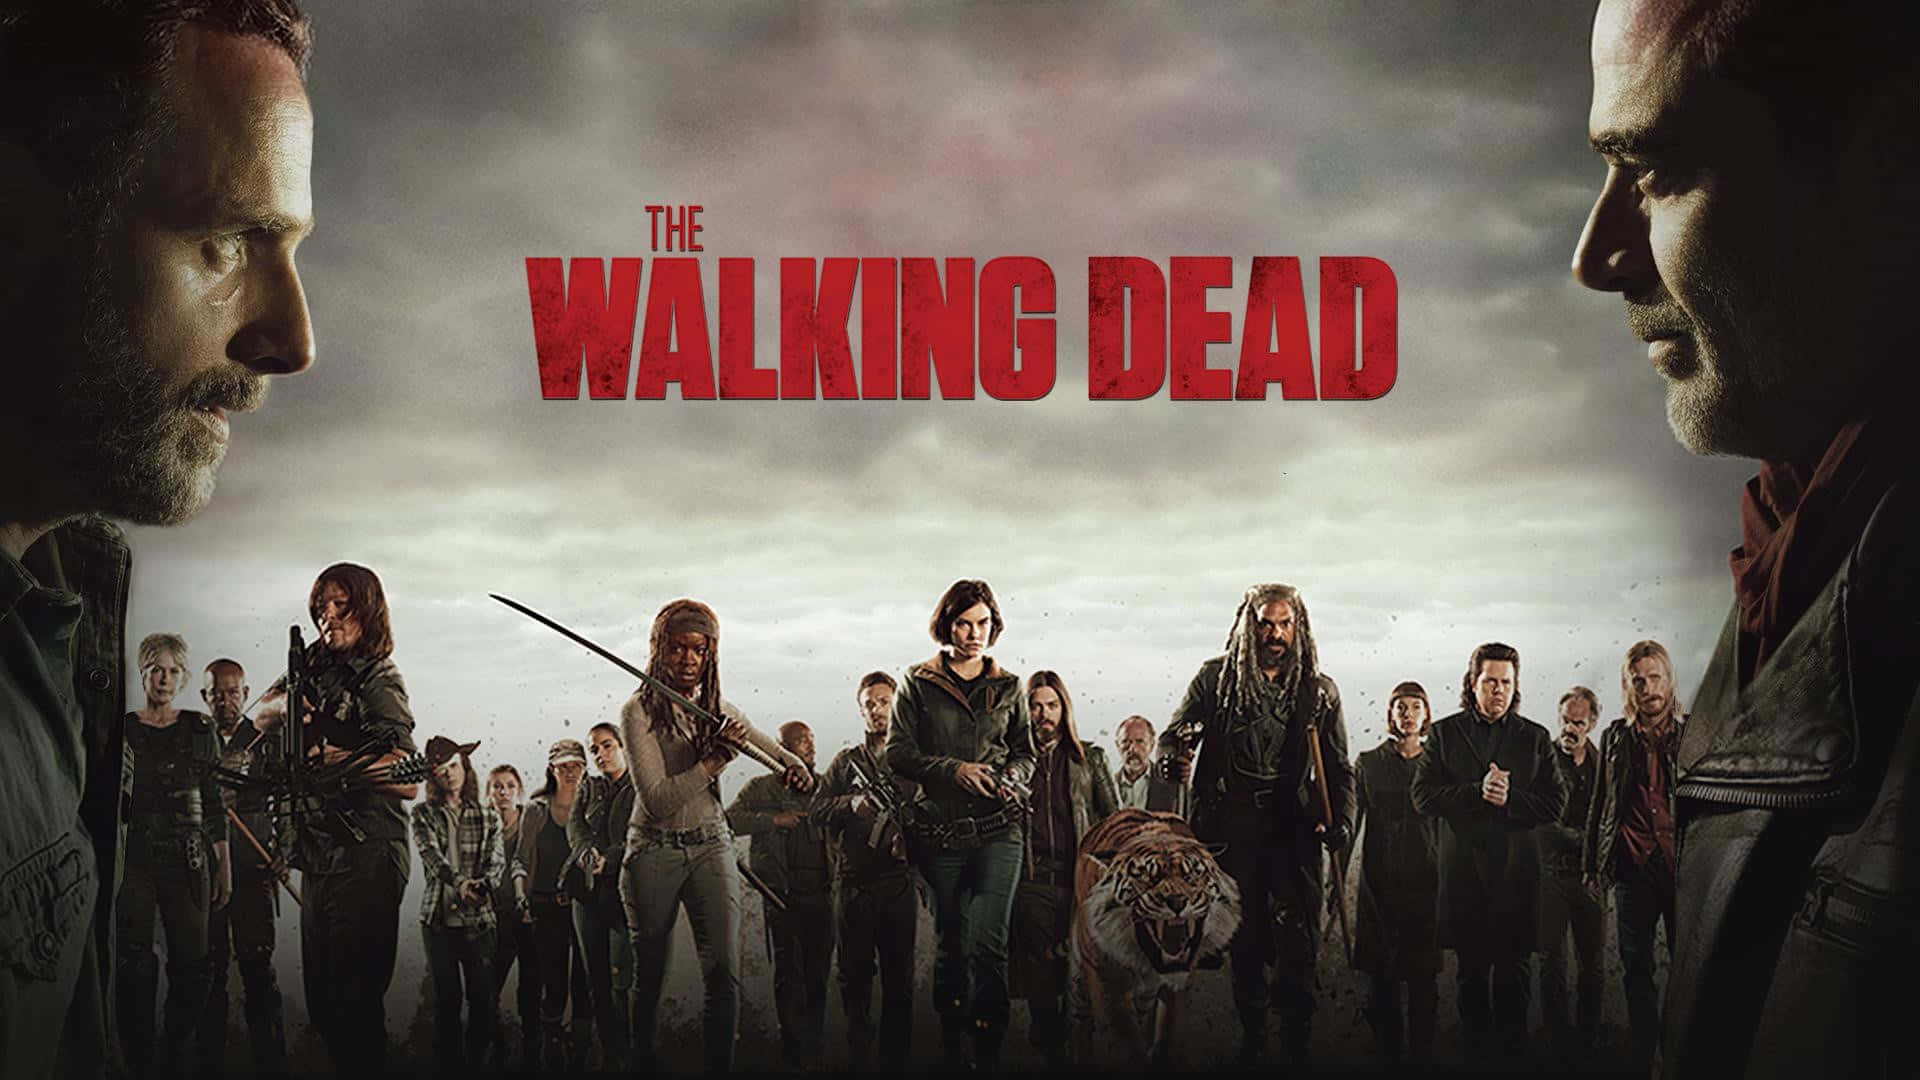 The Walking Dead Season 1 - Tv Series